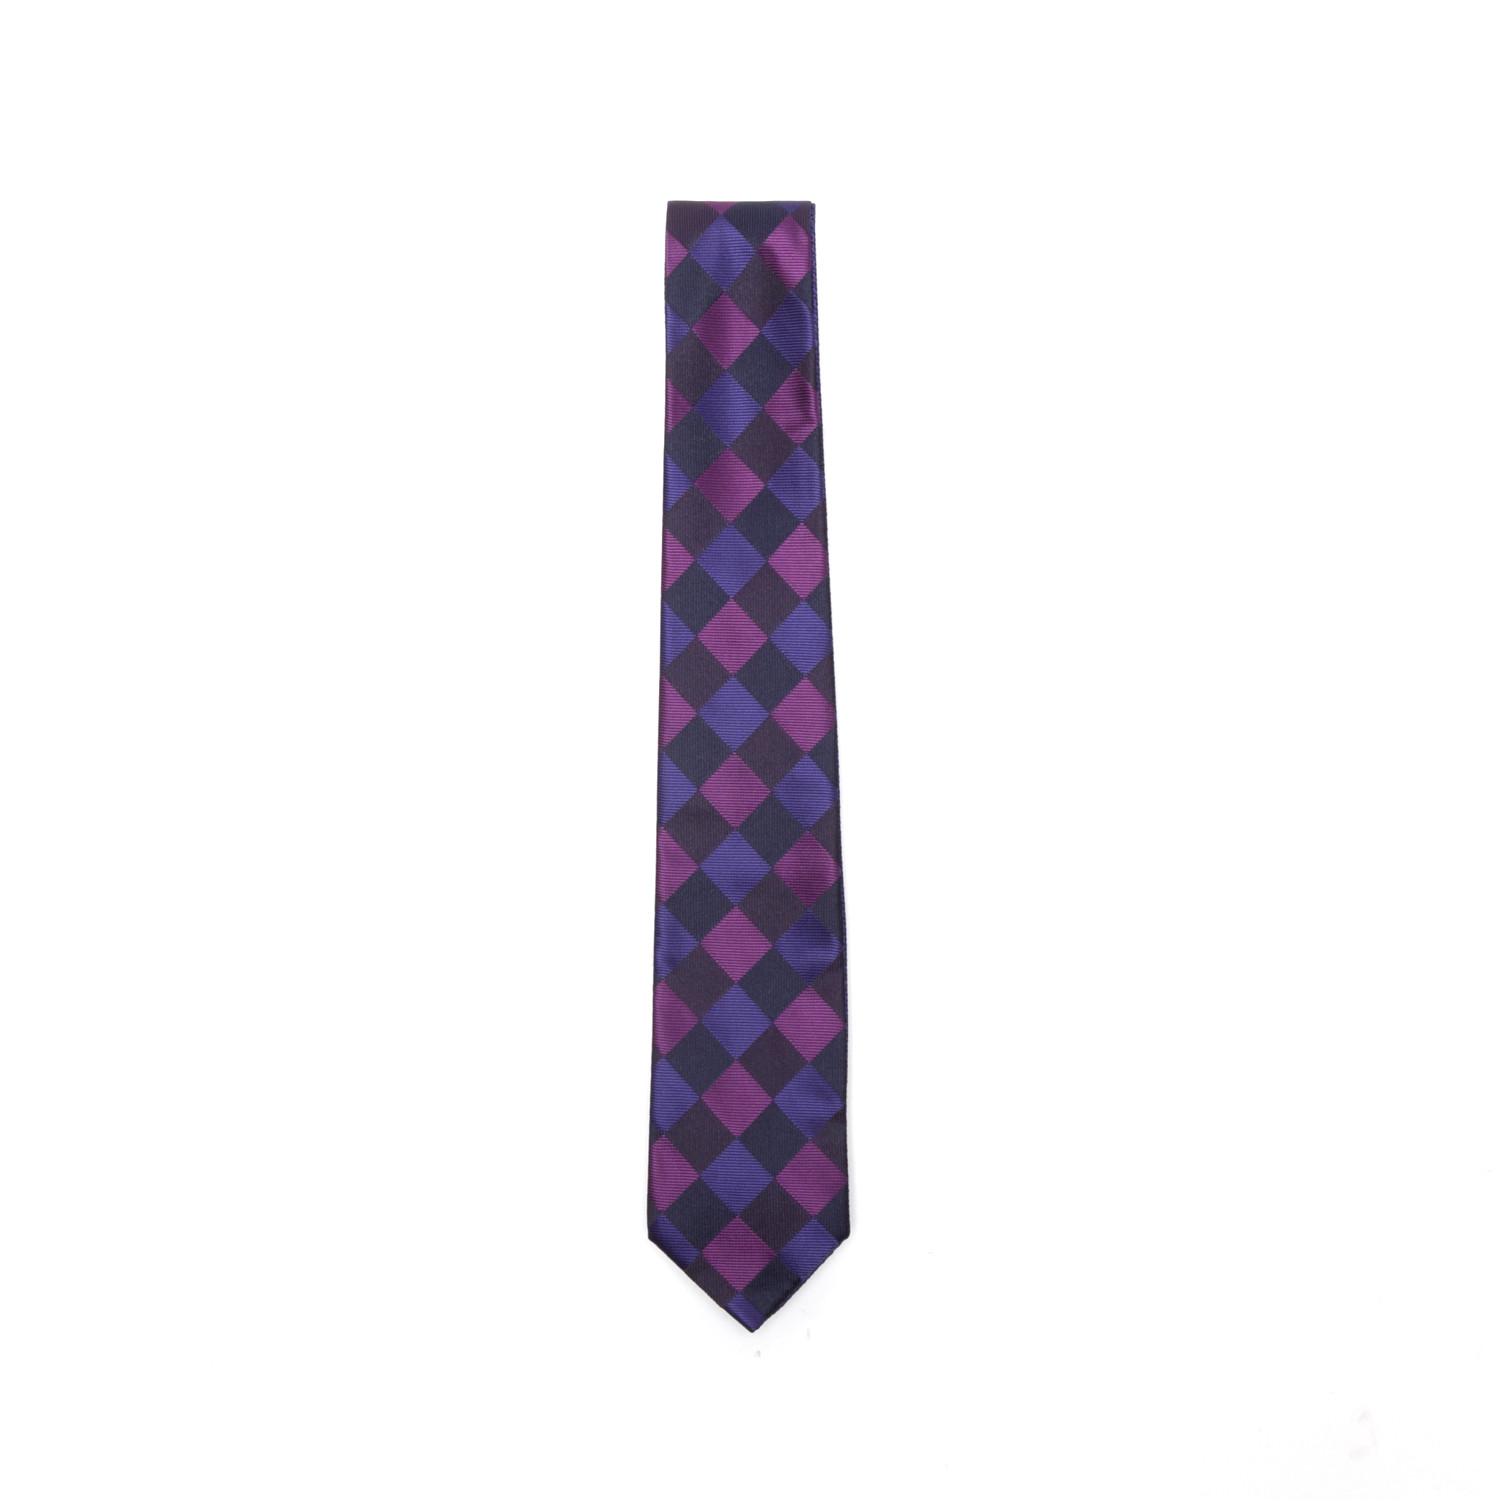 Silver + Purple Checkered Tie - Flip My Tie - Touch of Modern